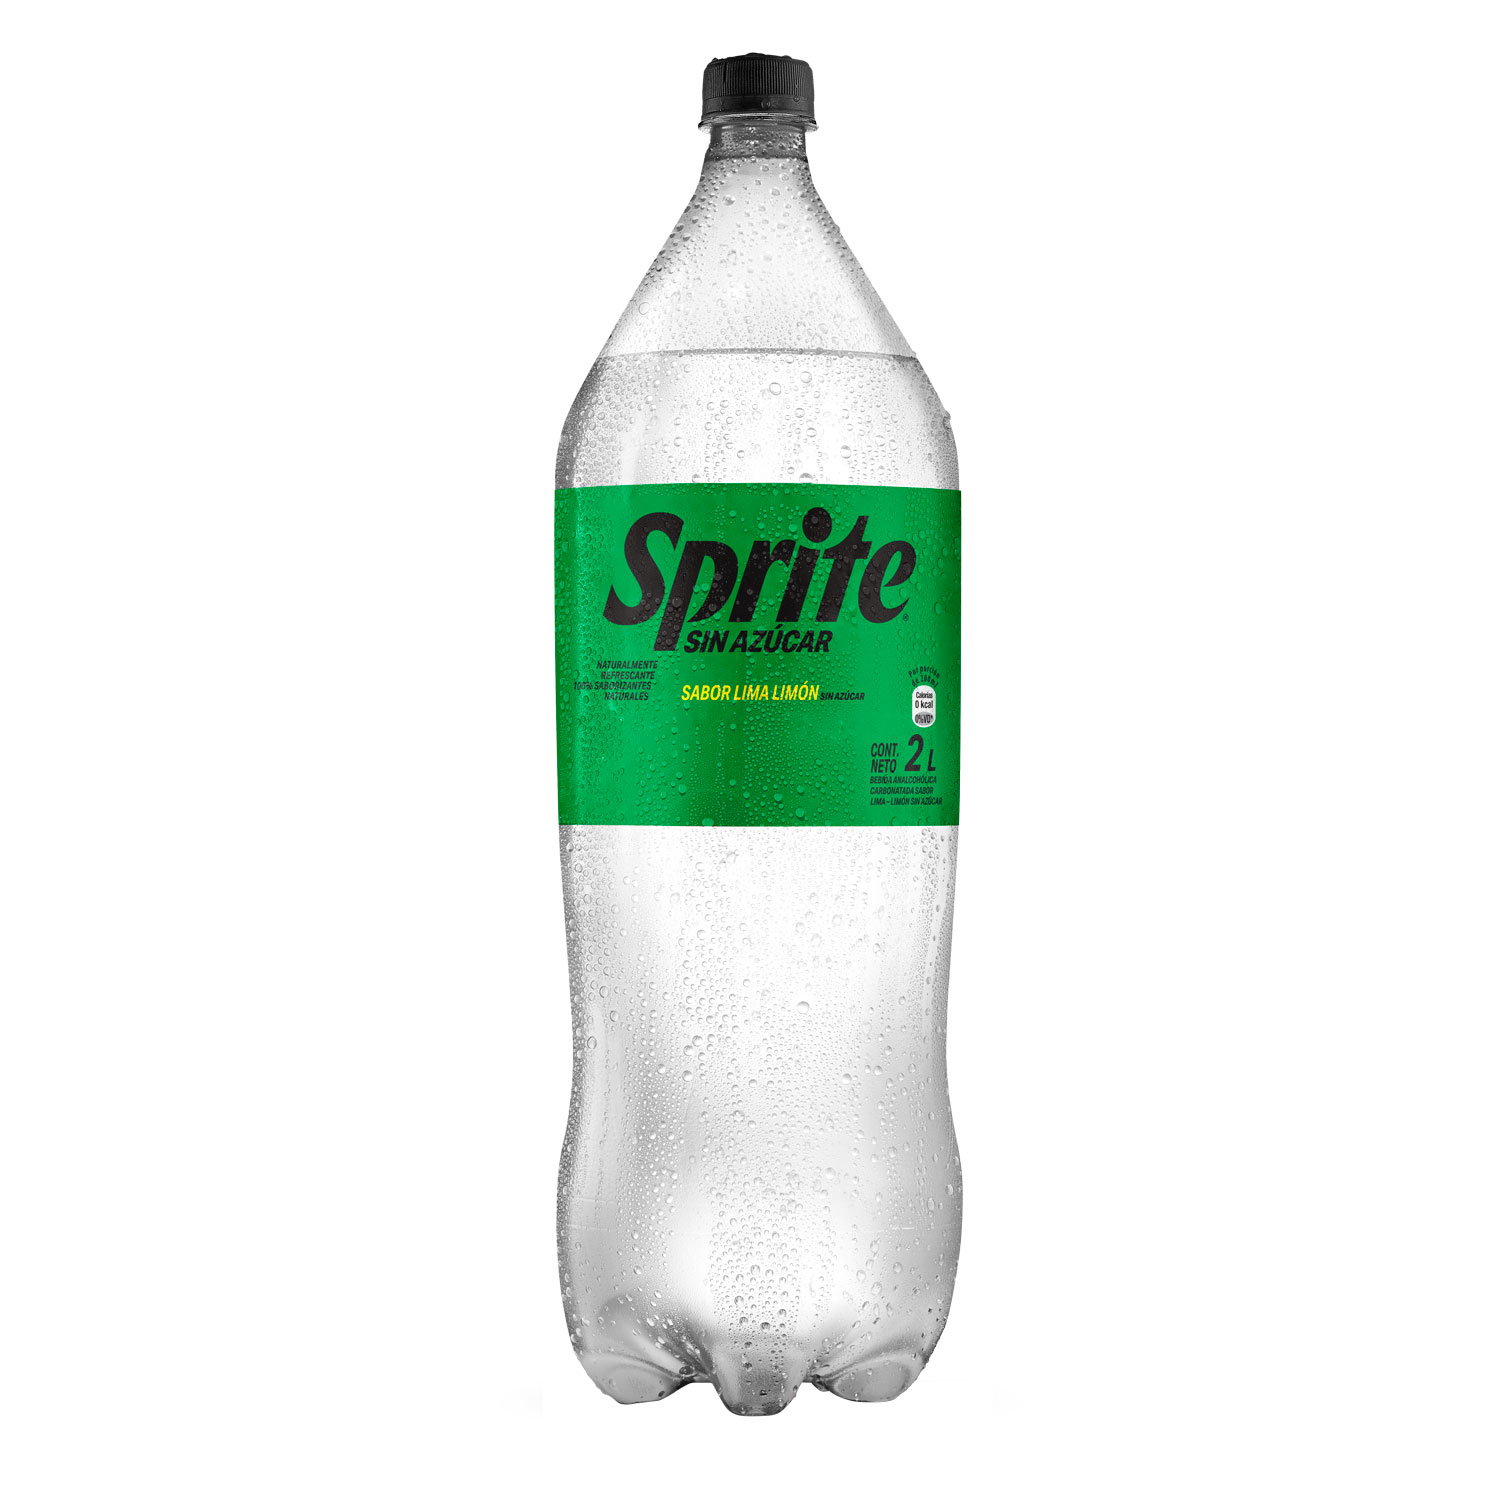 Botella de Sprite Sin Azúcar 2L